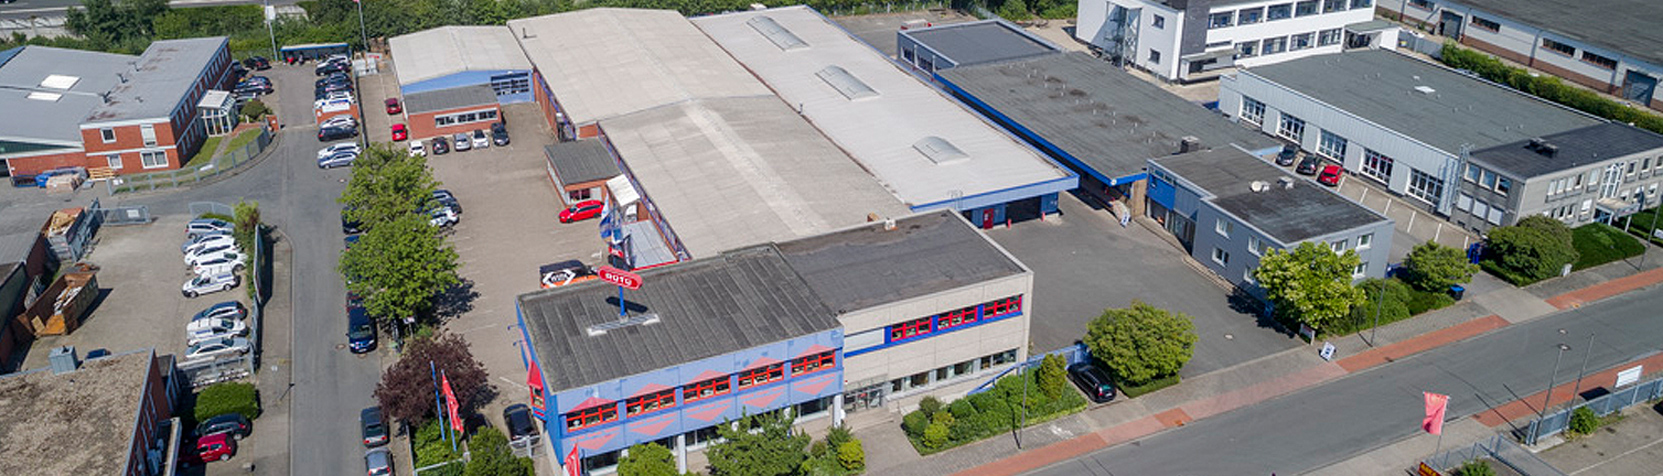 Rüschenschmidt & Tüllmann GmbH & Co. KG Groß- und Einzelhandel in